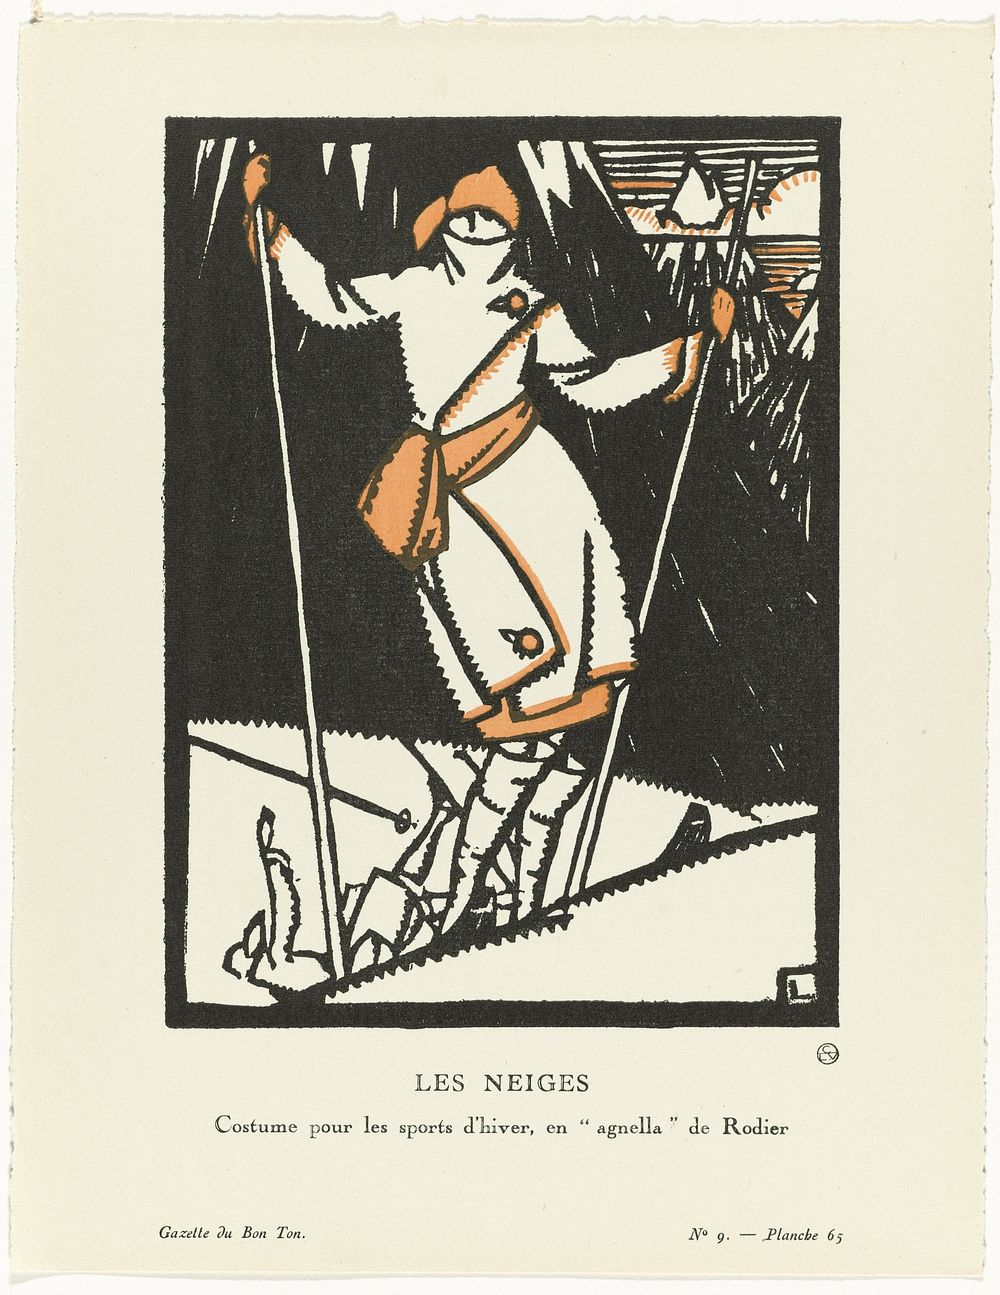 Gazette du Bon Ton, 1920 - No. 9, Pl. 65 : Les Neiges / Costume pour les sports d'hiver, en"agnella" de Rodier (1920) by…